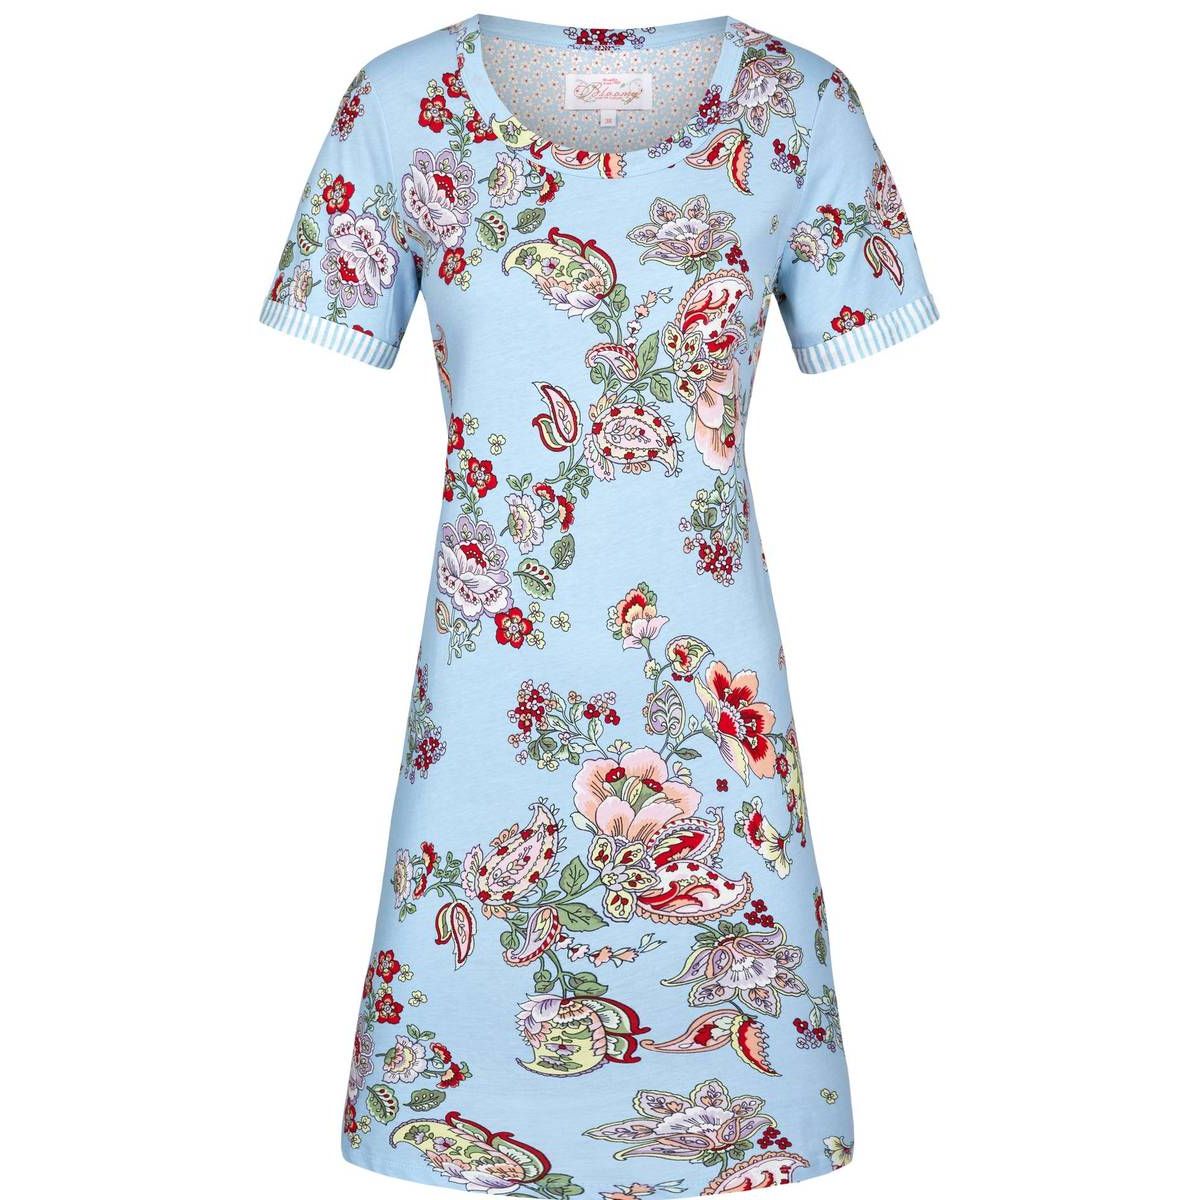 Summer sky Bloomy nachthemd | Bestel eenvoudig online | verzending | Snel in huis | Online de mooiste pyjama's, nachthemden, ondermode en meer